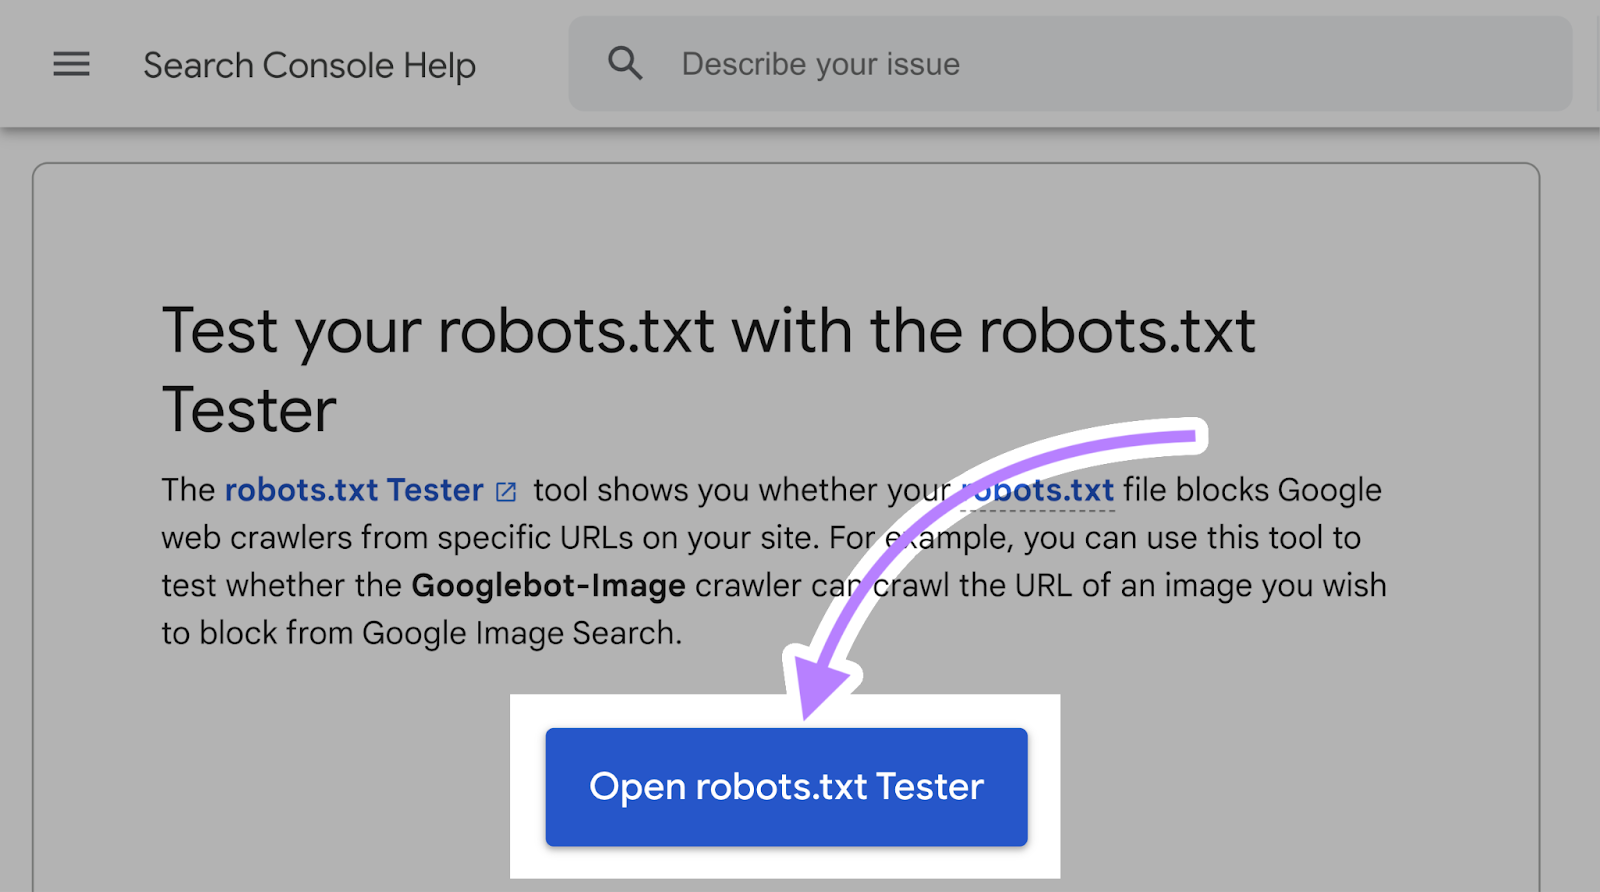 Ouvrir le testeur robots.txt